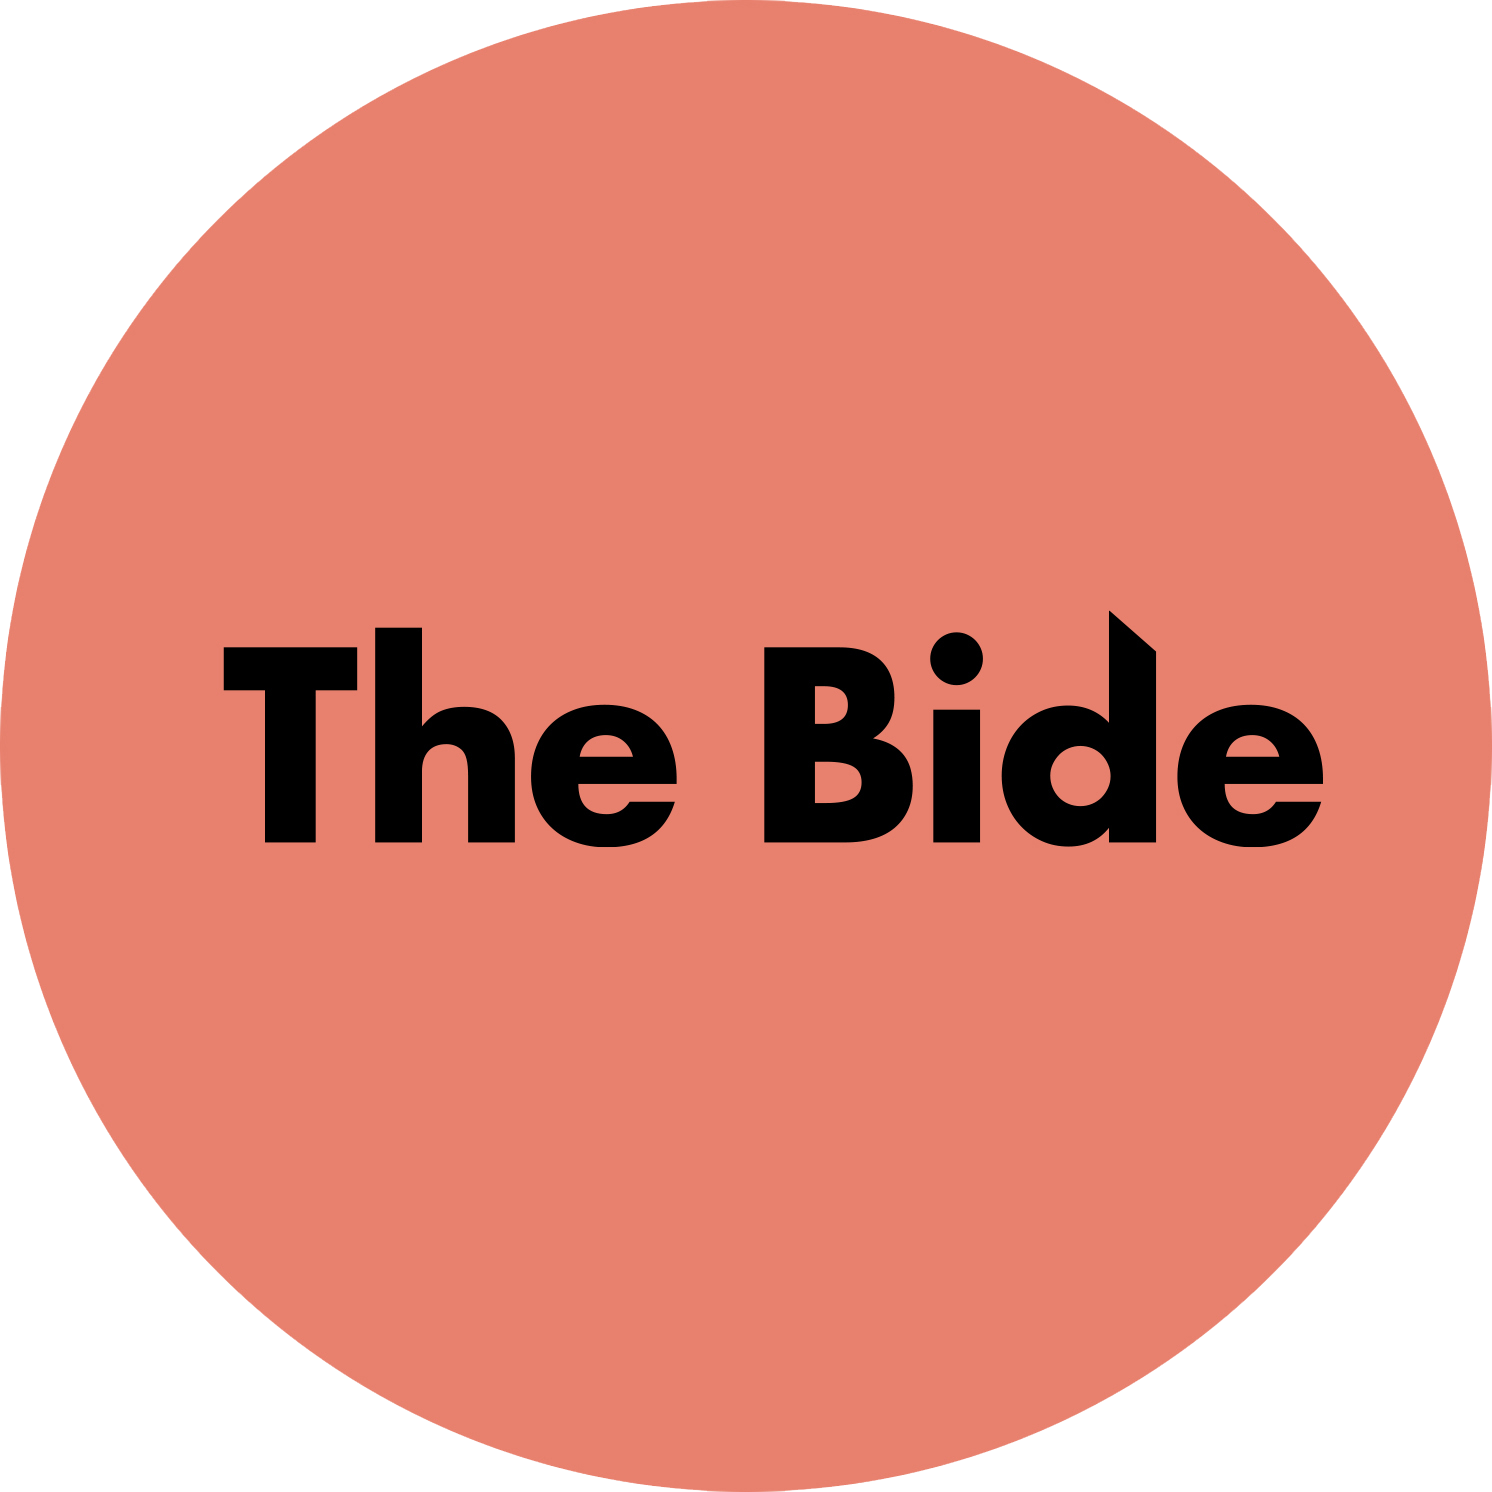 The Bide